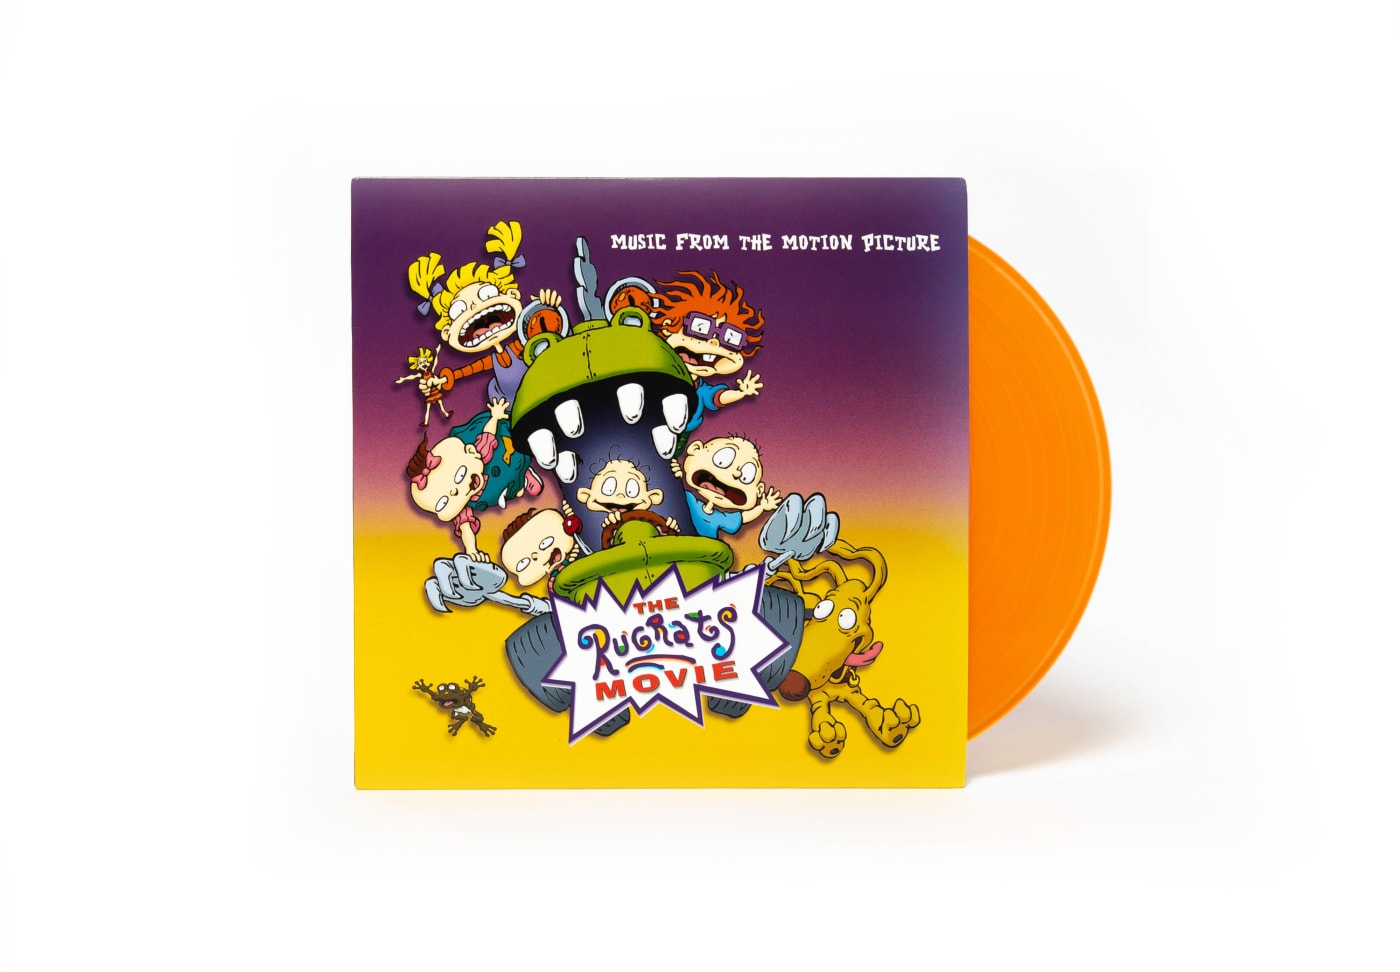 'The Rugrats Movie' soundtrack vinyl